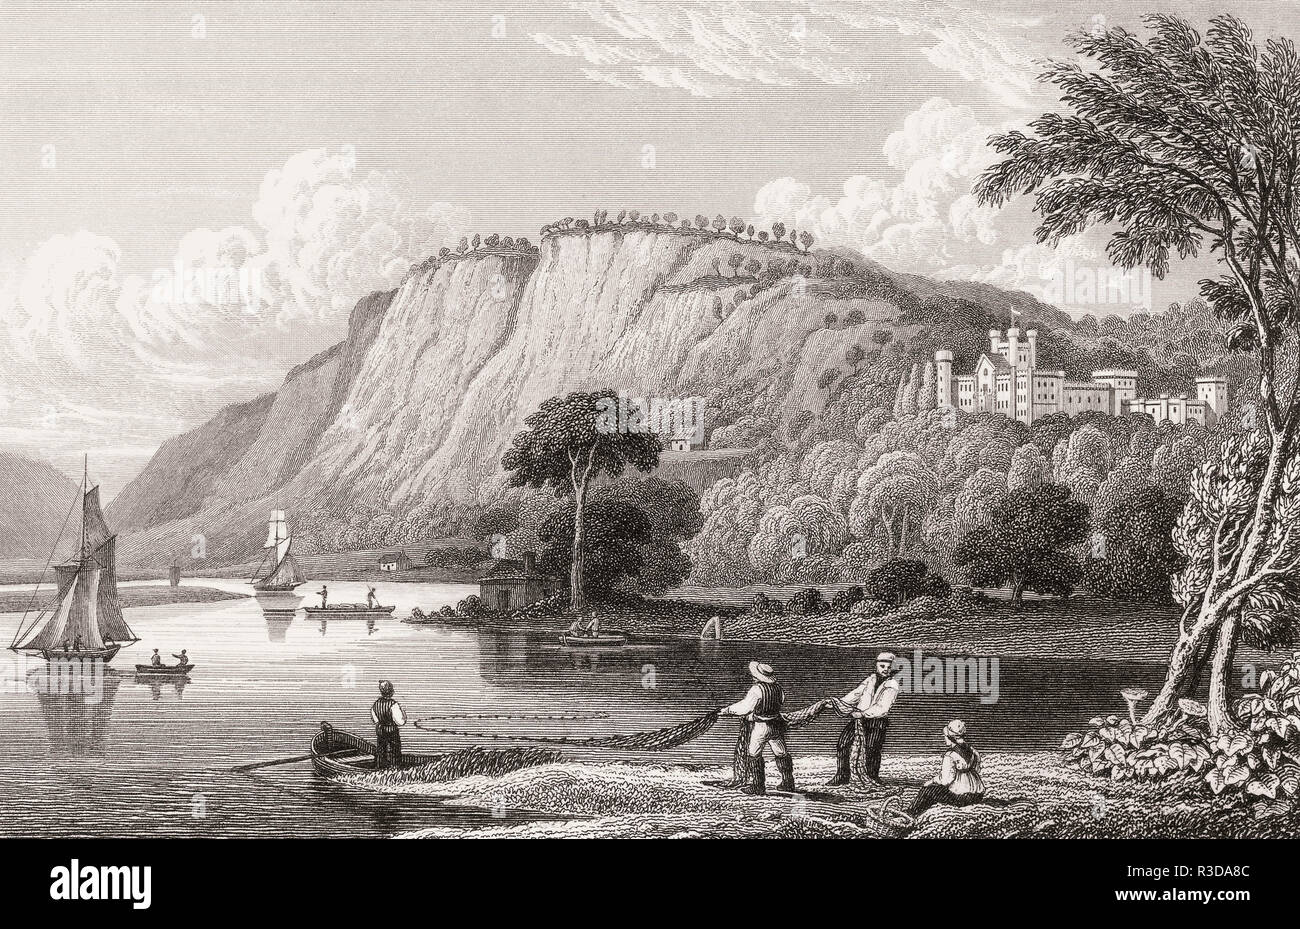 Il castello di Kinfauns, Perth and Kinross, secolo XIX, dalla moderna Atene da Th. H. Pastore Foto Stock